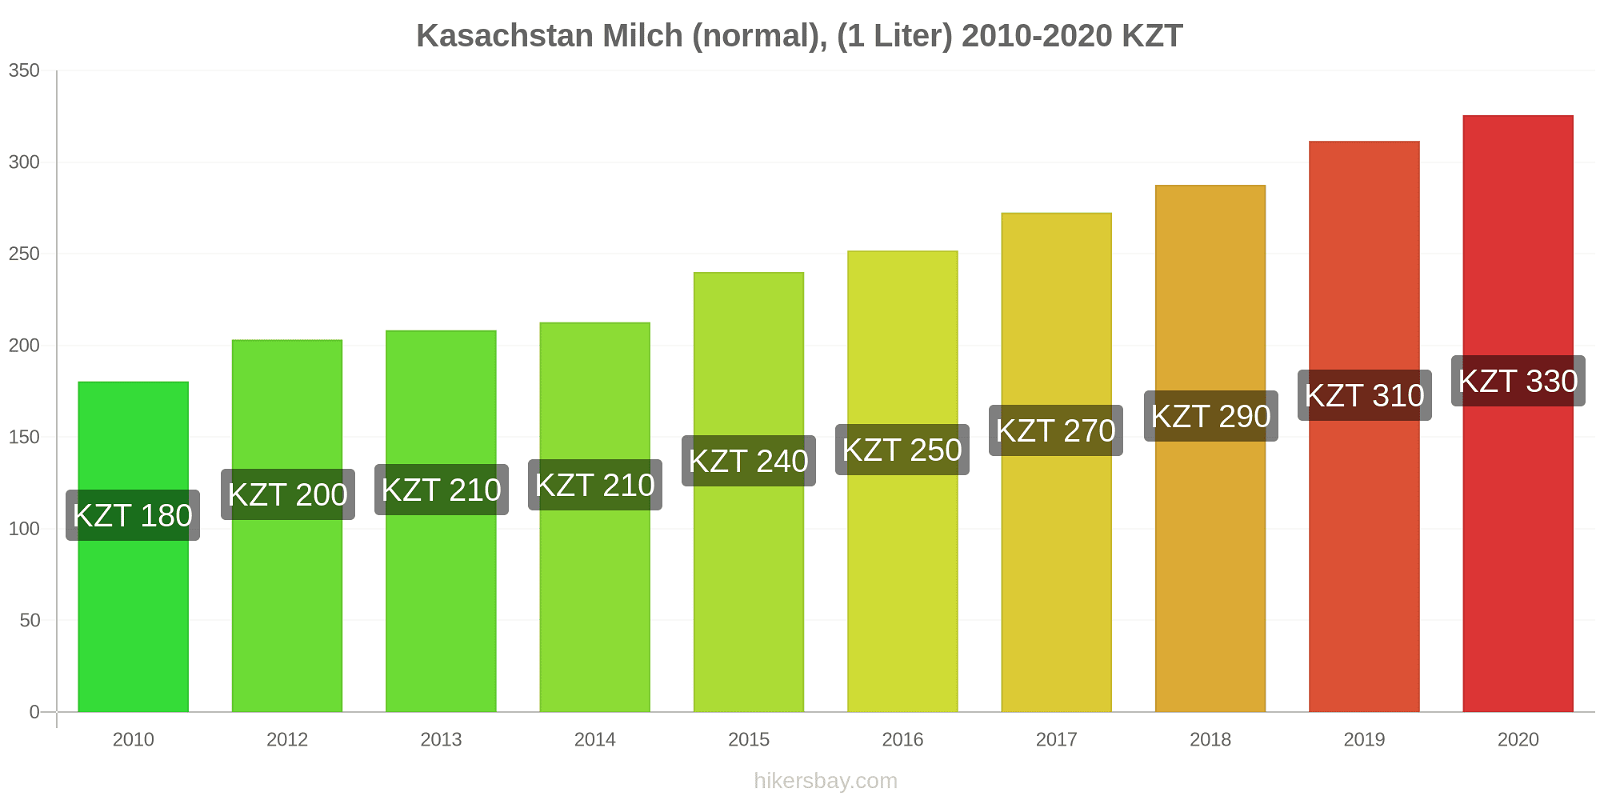 Kasachstan Preisänderungen (Regulär), Milch (1 Liter) hikersbay.com